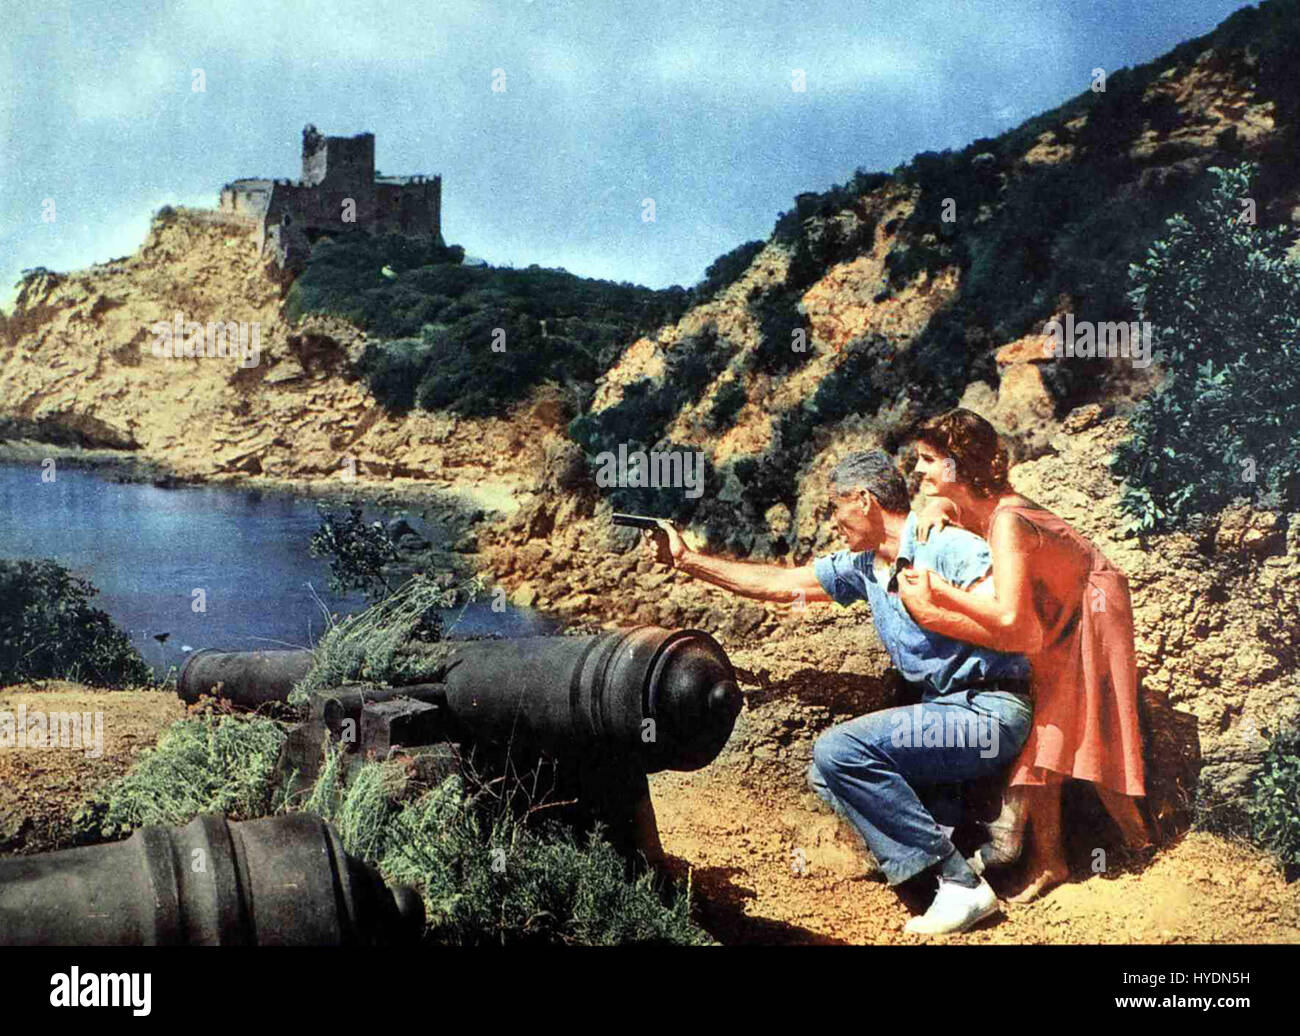 Sturm über Eden aka. Raw Wind in Eden, USA 1958 Regie: Richard Wilson Actors/Stars: Esther Williams, Jeff Chandler, Rossana Podestà Stock Photo